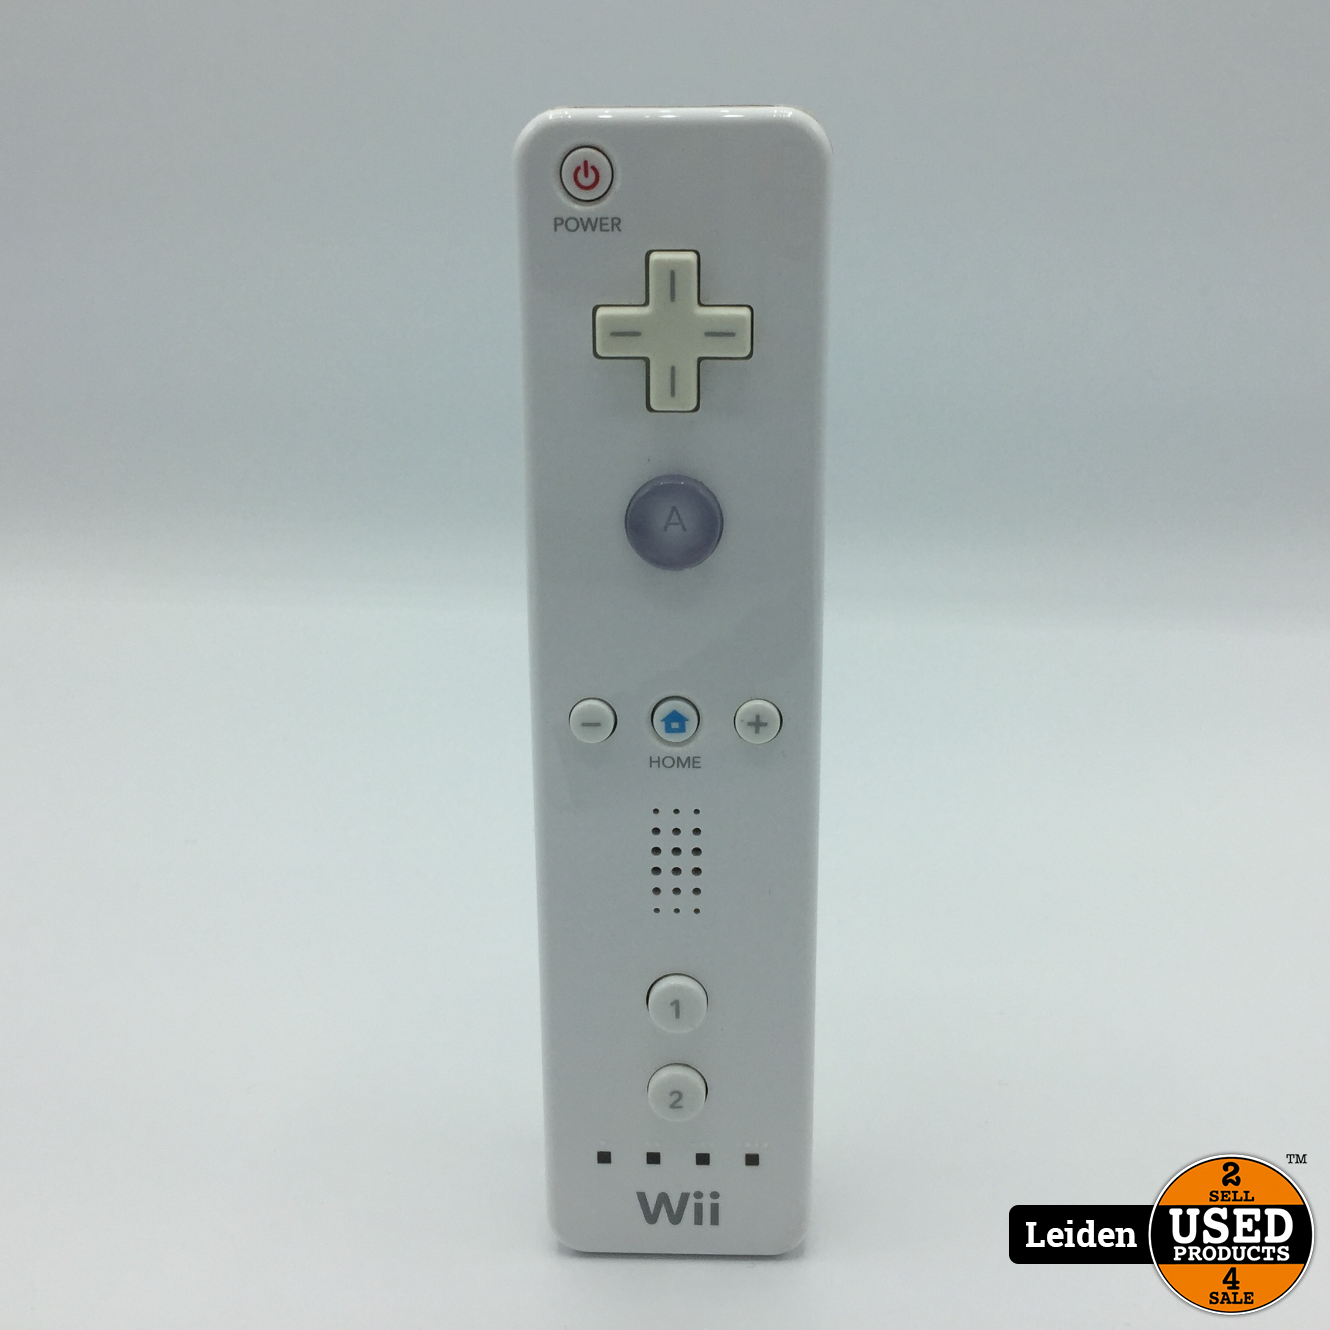 Handel klant Sluiting Nintendo Wii - Zwart/Wit - Used Products Leiden